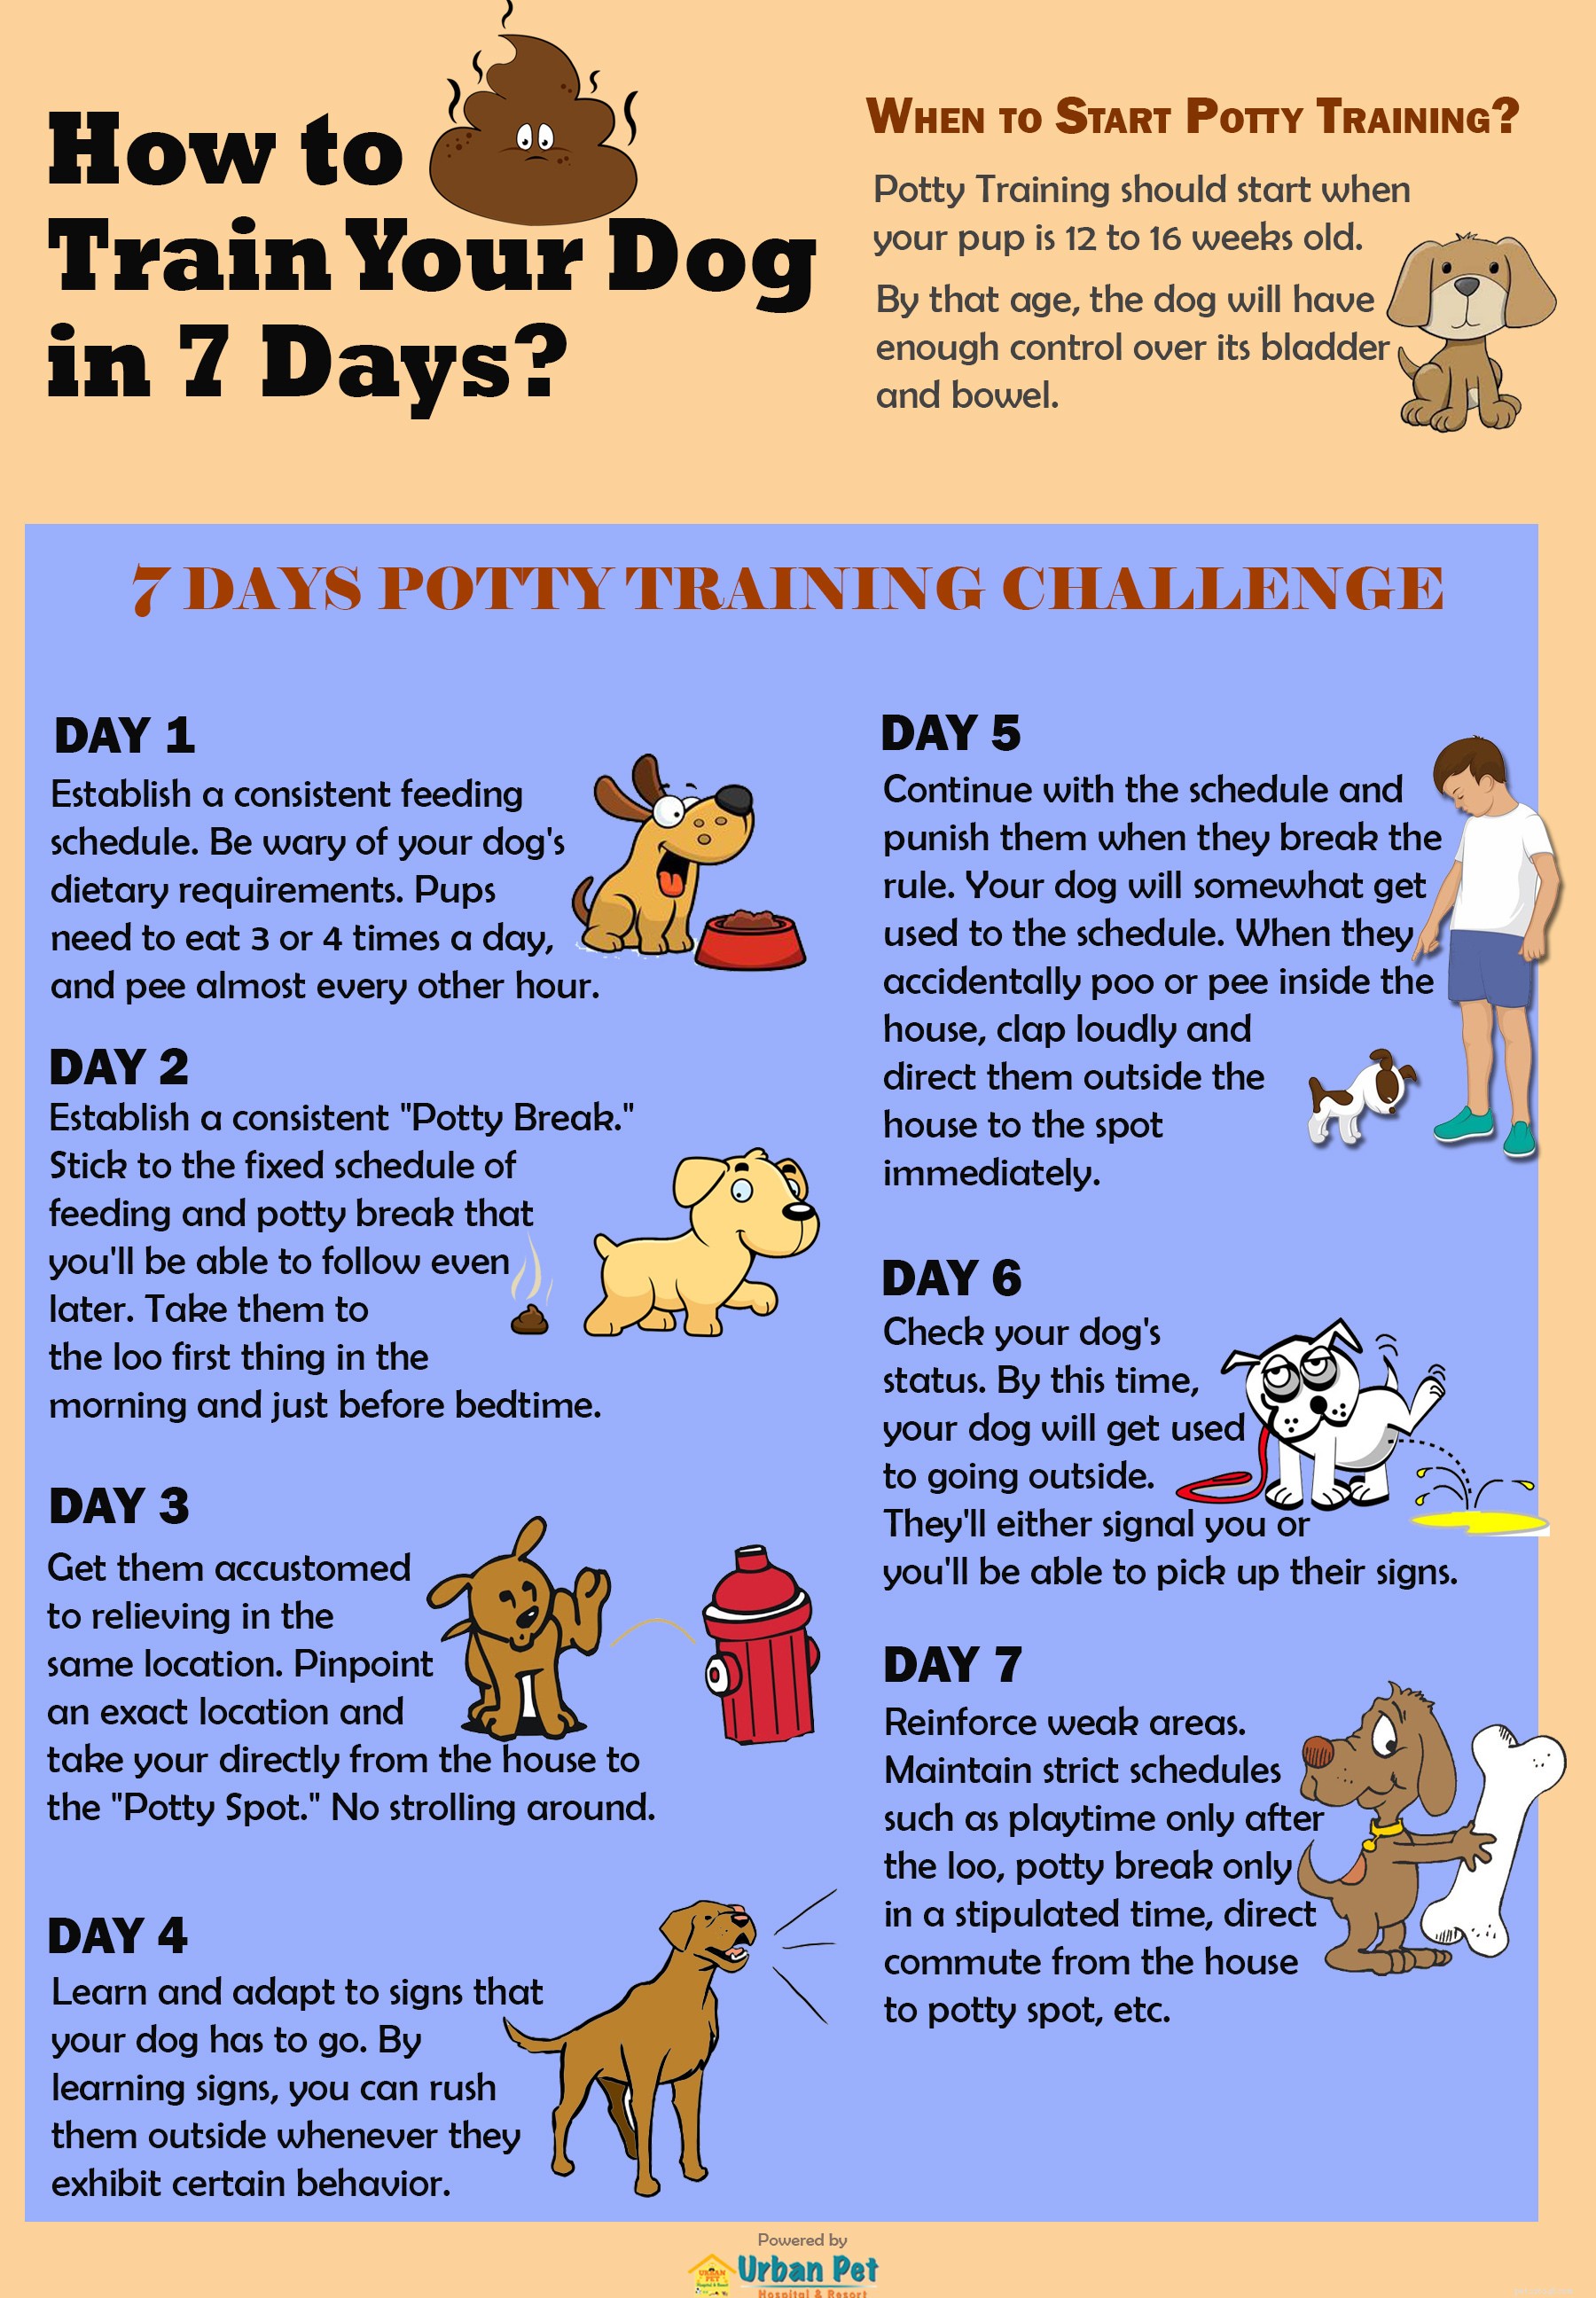 Hoe train ik mijn hond zindelijk in slechts 7 dagen?